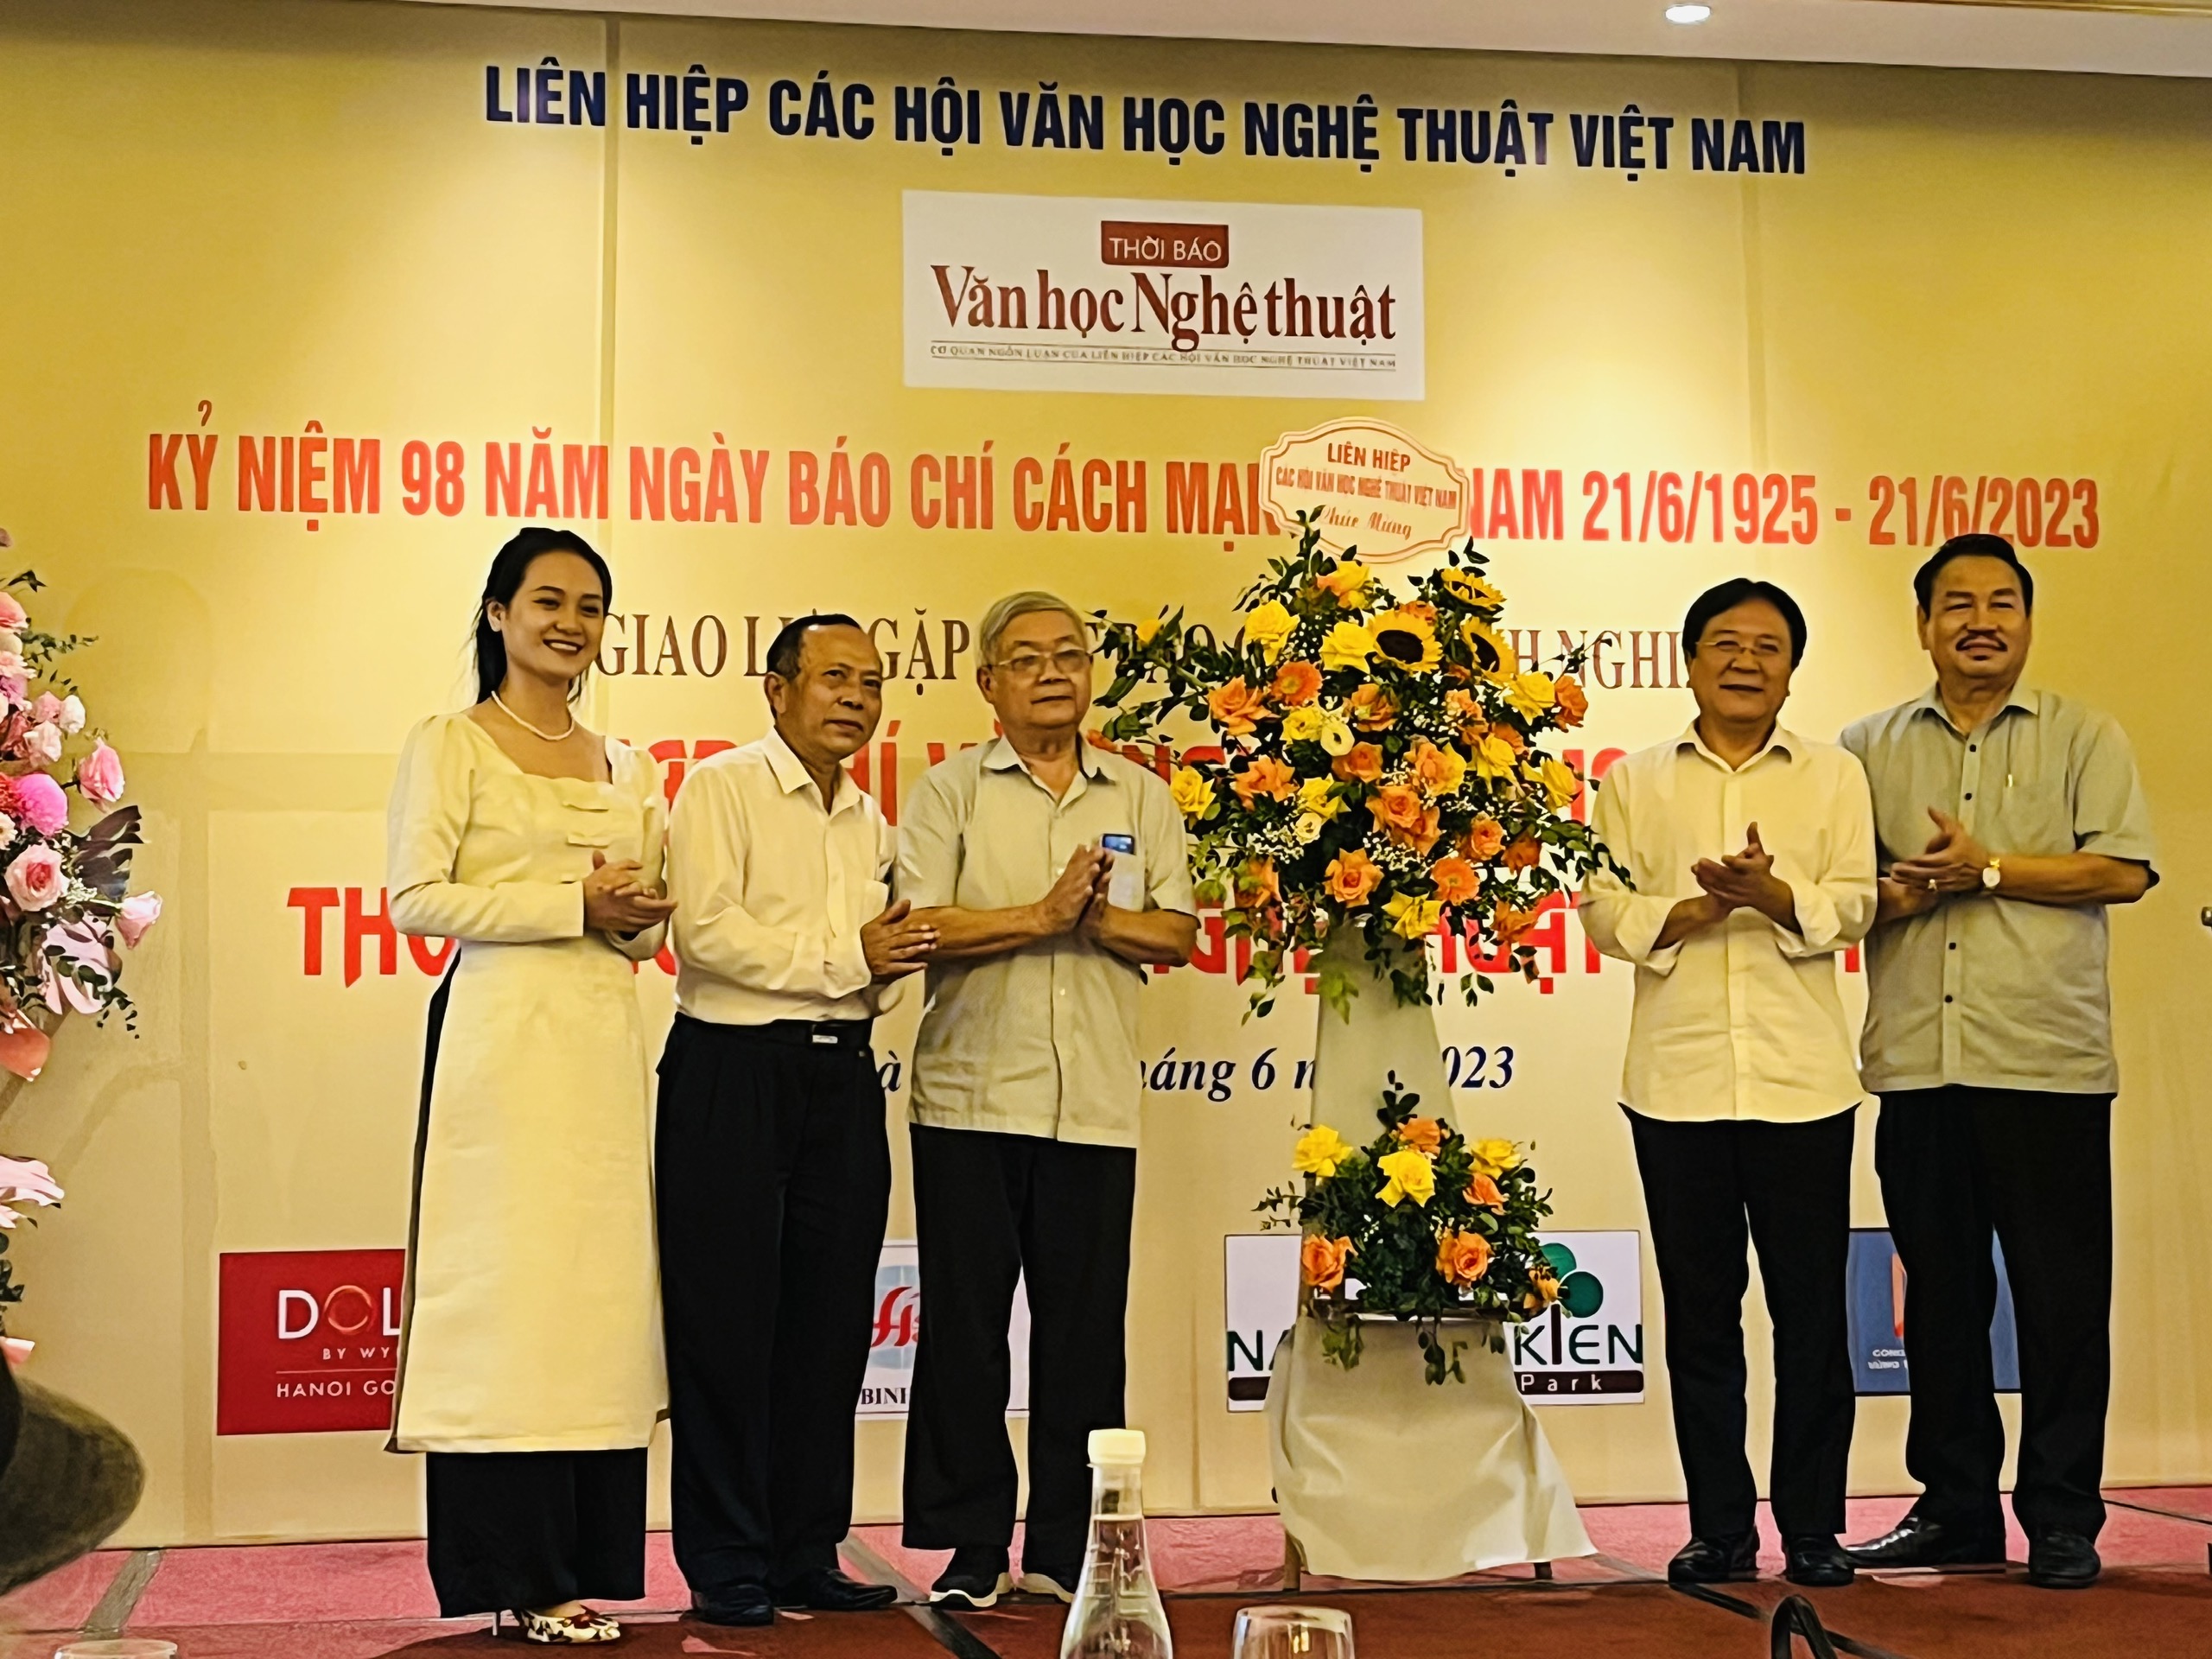 Phát huy thế mạnh để phát triển báo chí của Liên hiệp các Hội Văn học nghệ thuật Việt Nam - 3